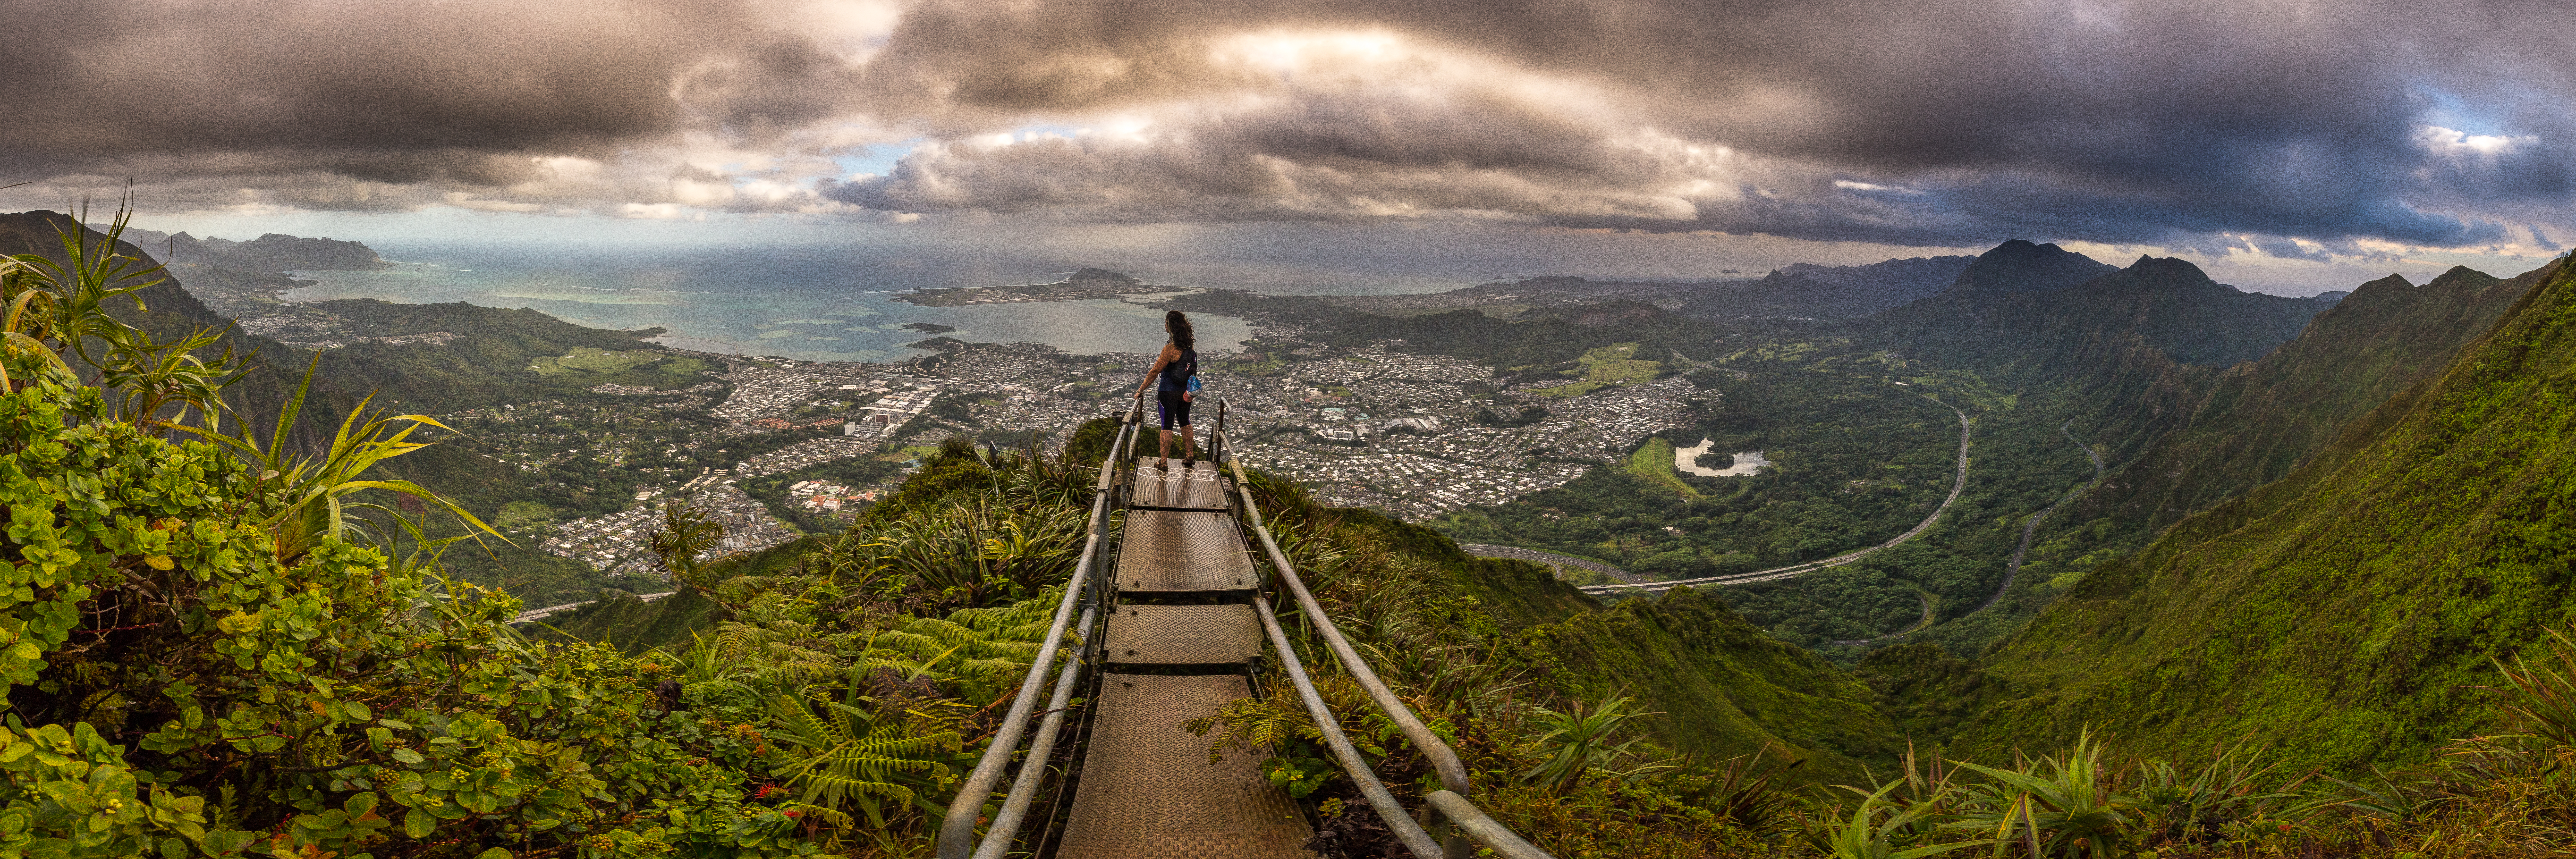 P_Tr_HI_Oahu_Haiku Stairs and Moanalua Ridge Hike_12.12.17-249-Pano.jpg